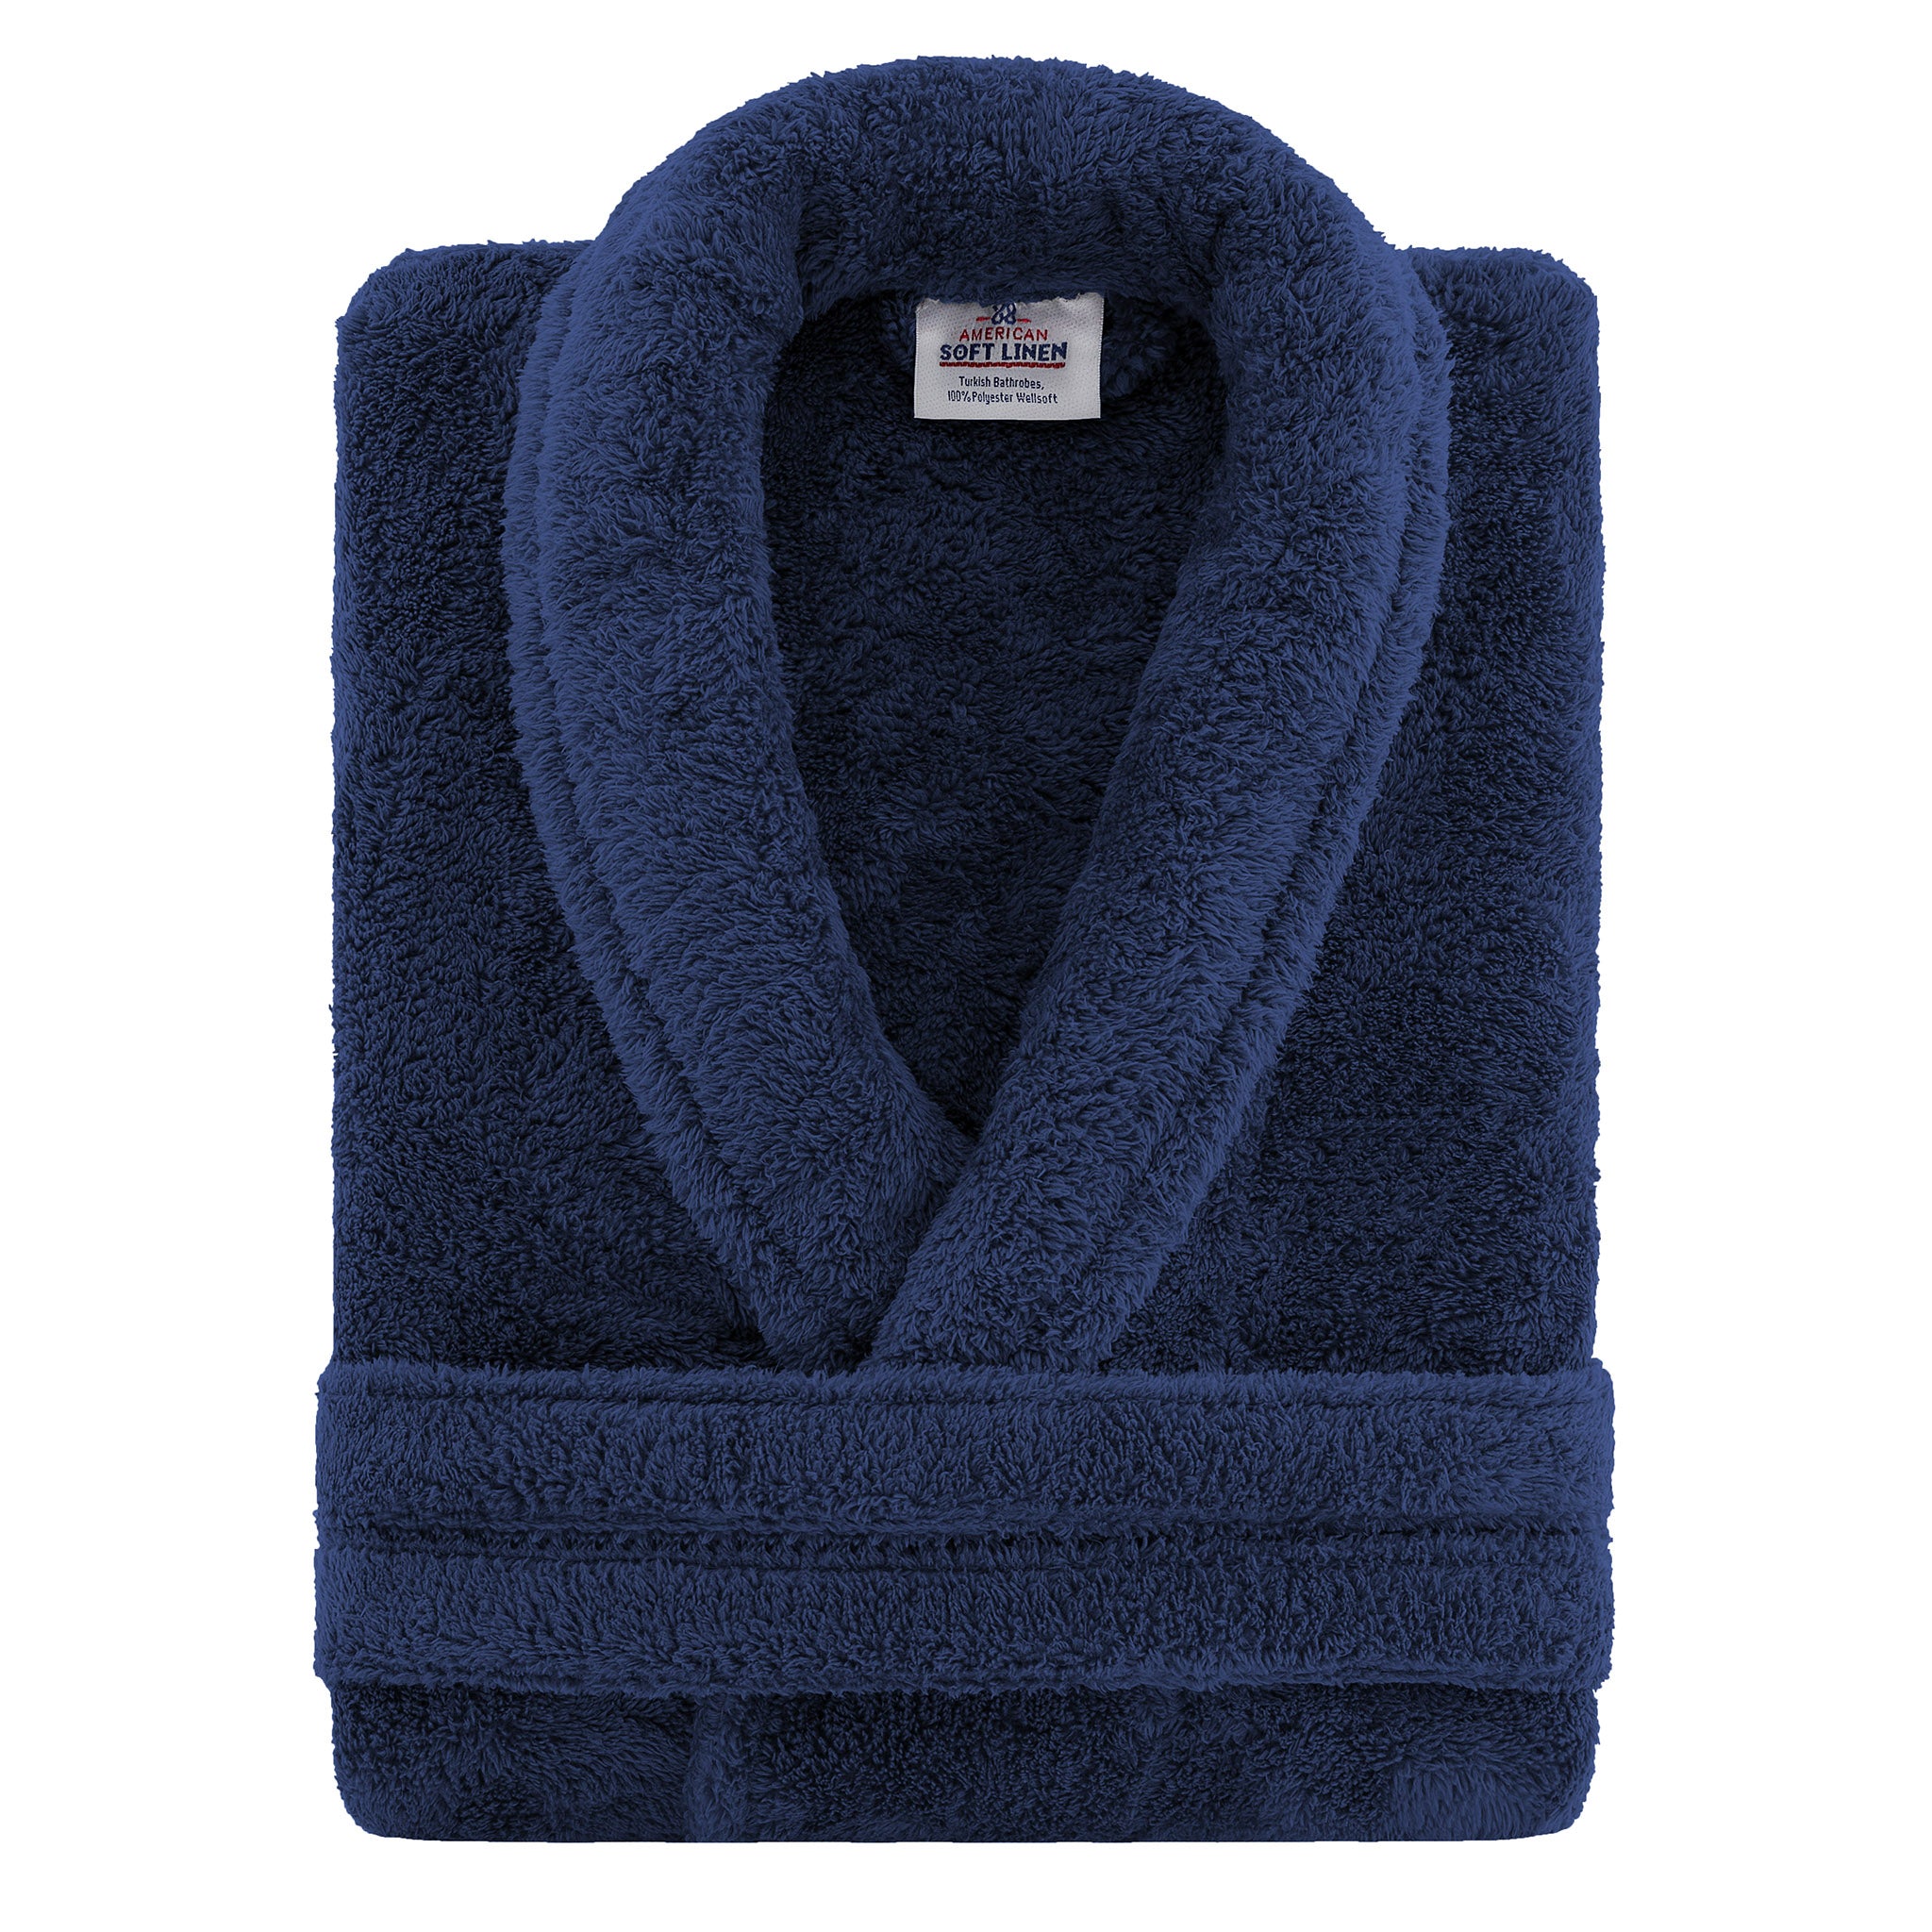 American Soft Linen Super Soft Absorbent and Fluffy Unisex Fleece Bathrobe -12 Set Case Pack -XL-XXL-navy-blue-3